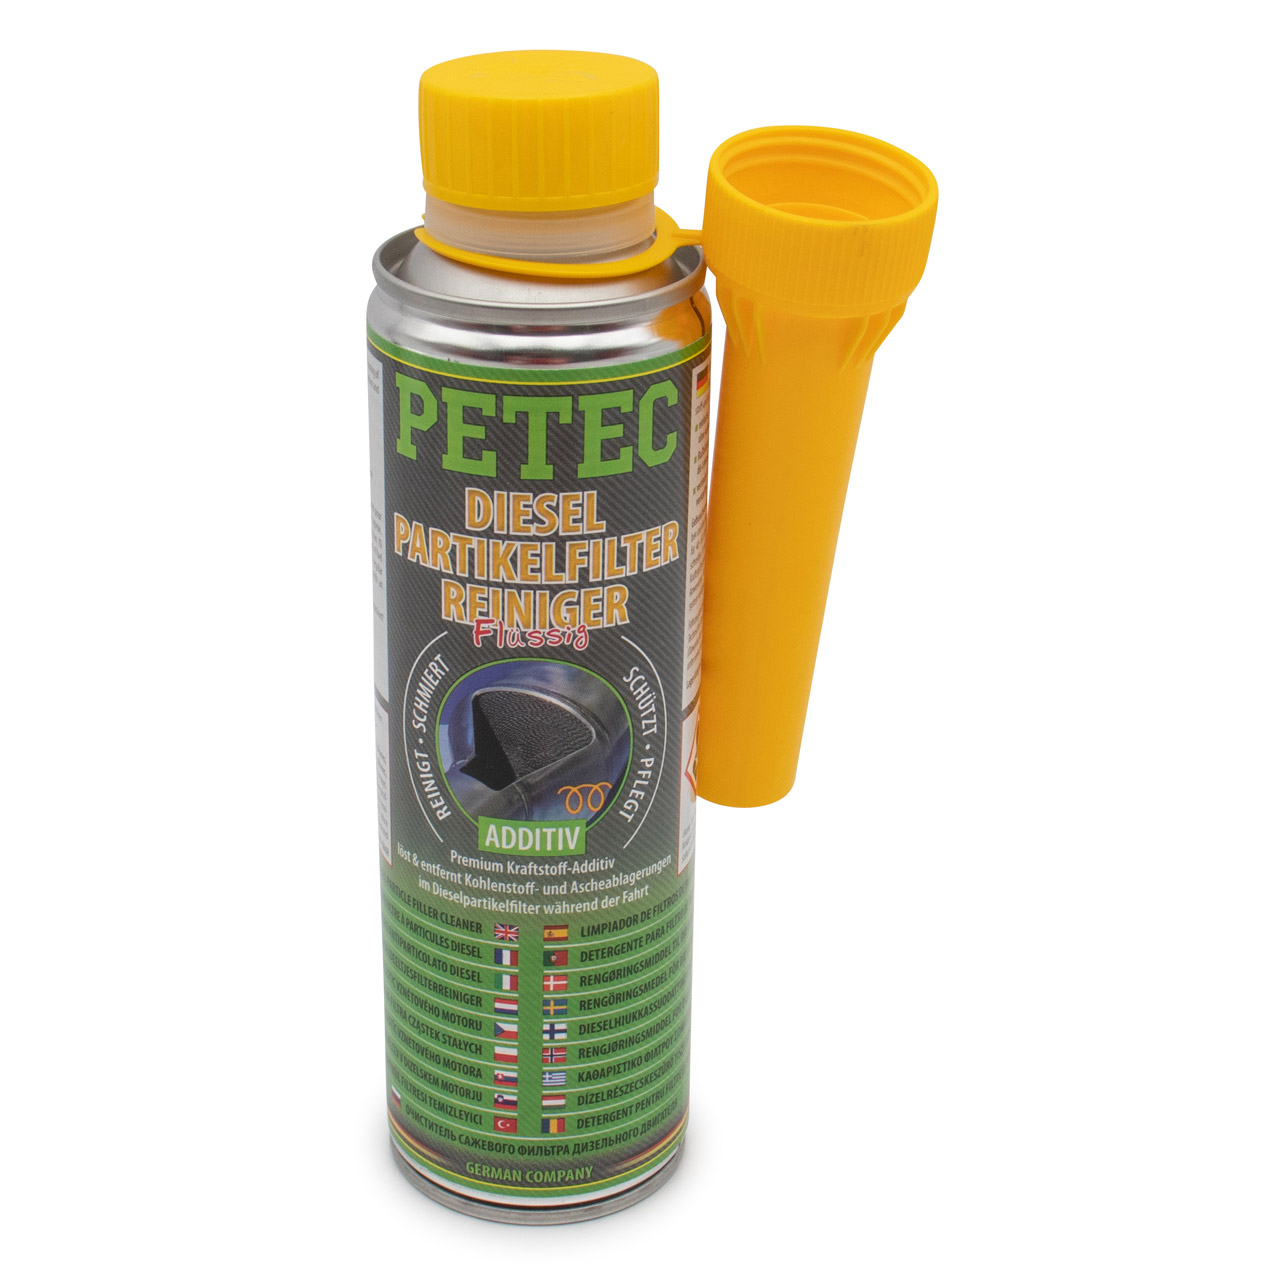 PETEC 80550 Dieselpartikelfilterreiniger Flüssig Premium Kraftstoffadditiv Additiv 300ml